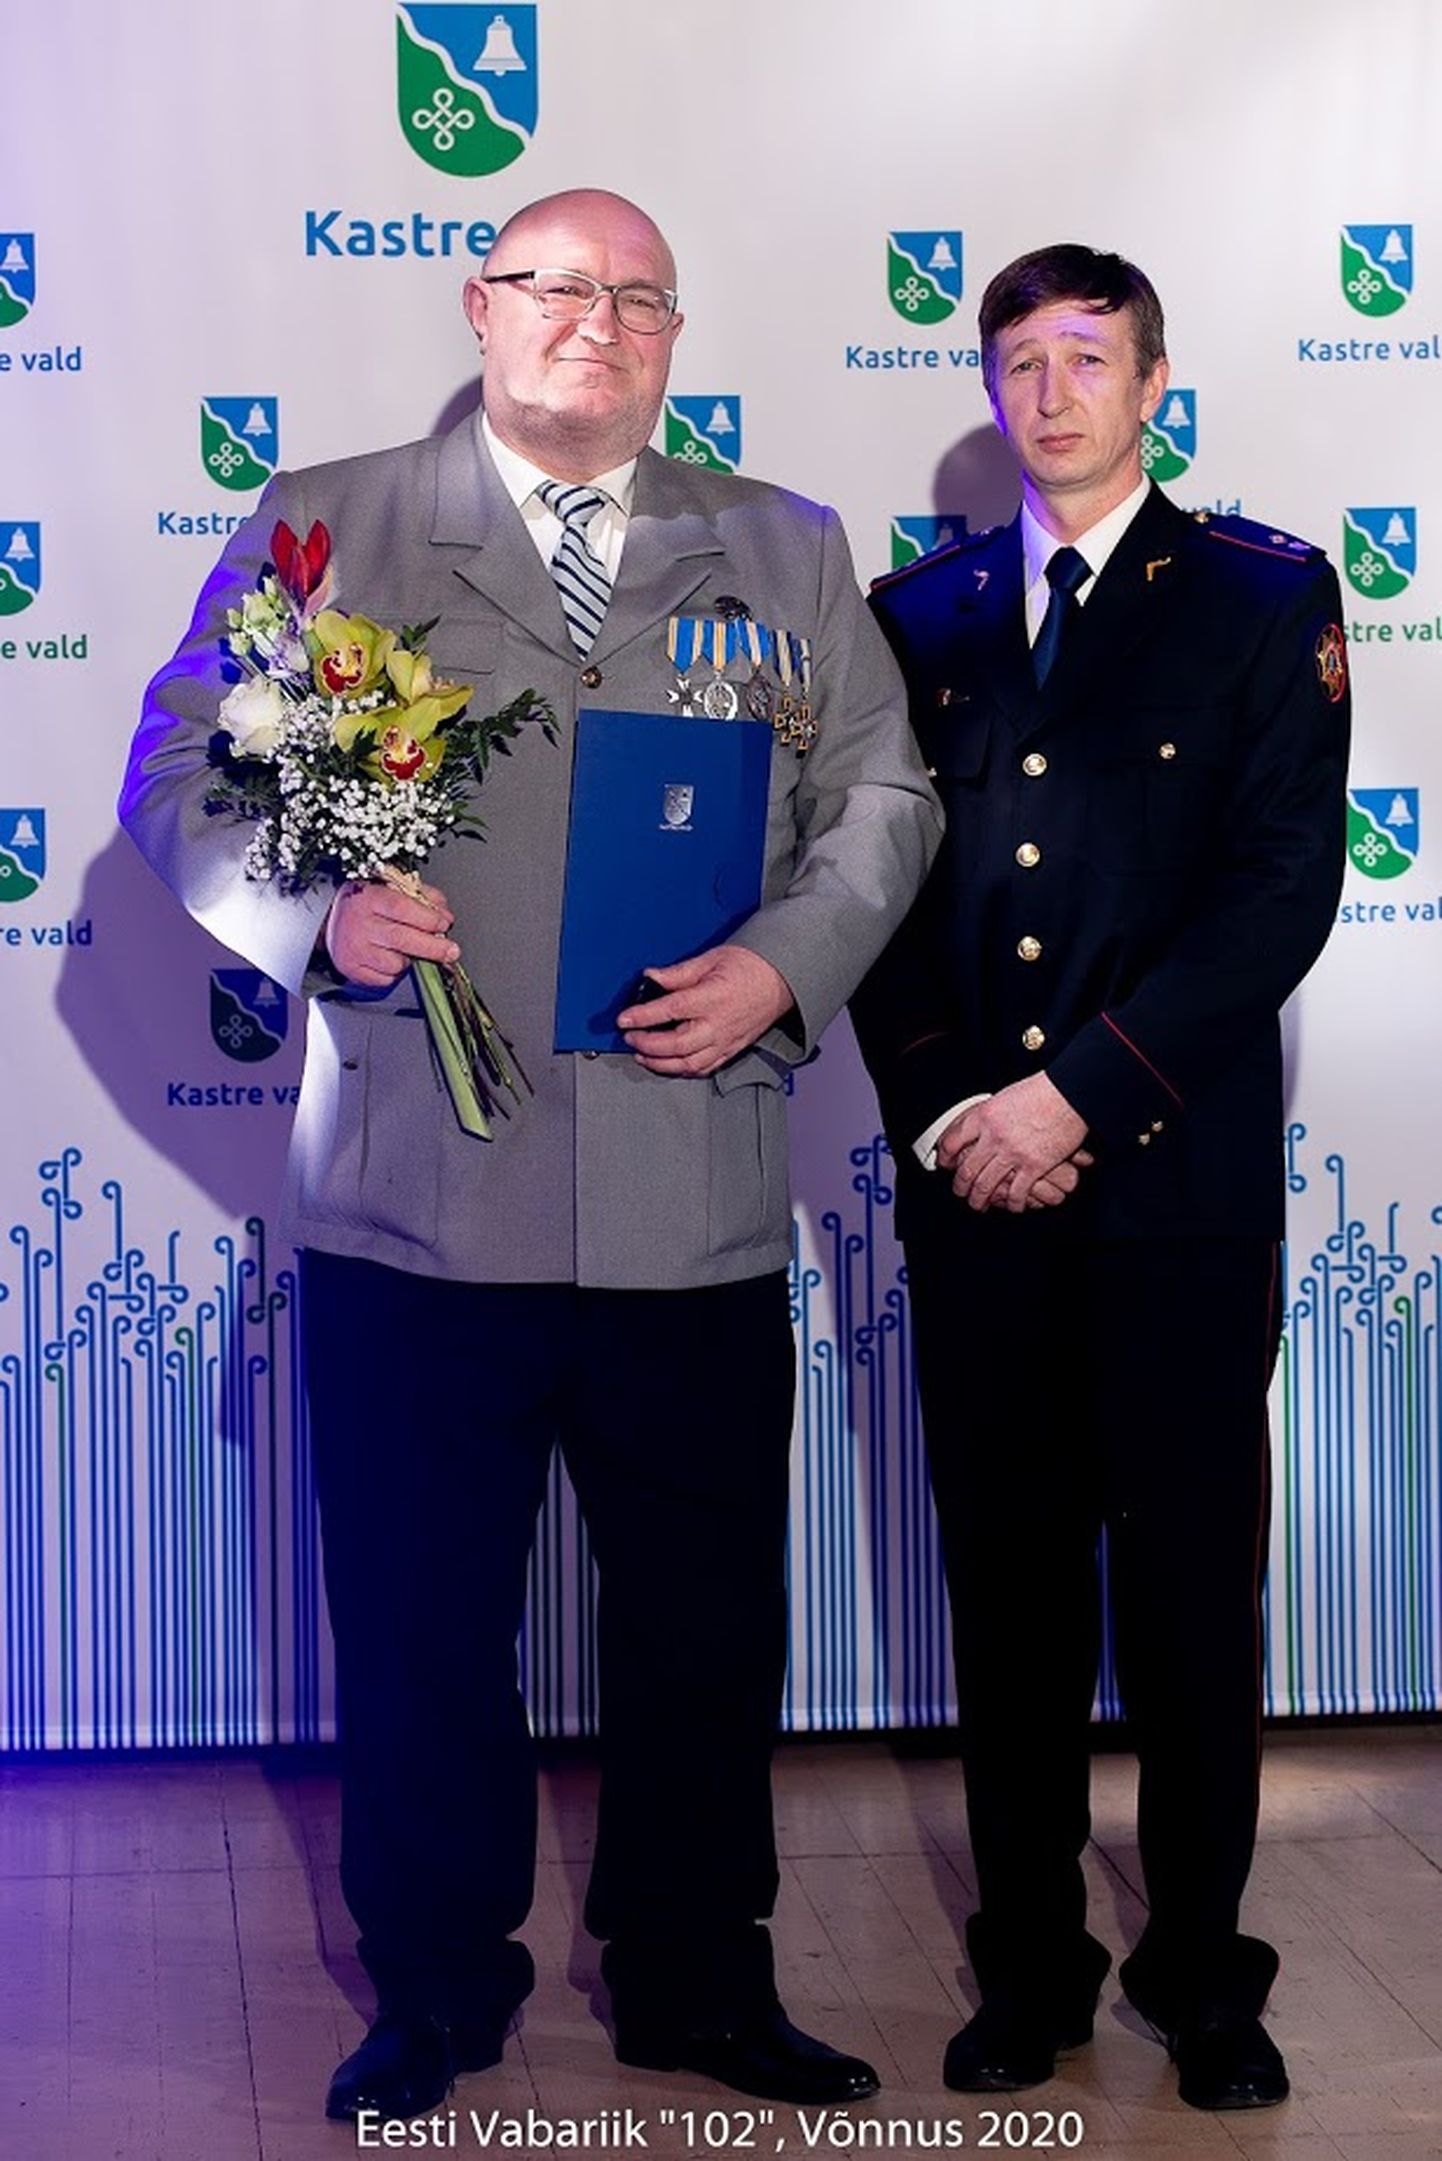 Hõbemärgi pälvinud Taivo Kirm (vasakul) ning tunnustuse üle andnud Kastre vallavolikogu esimees Mati Möller.